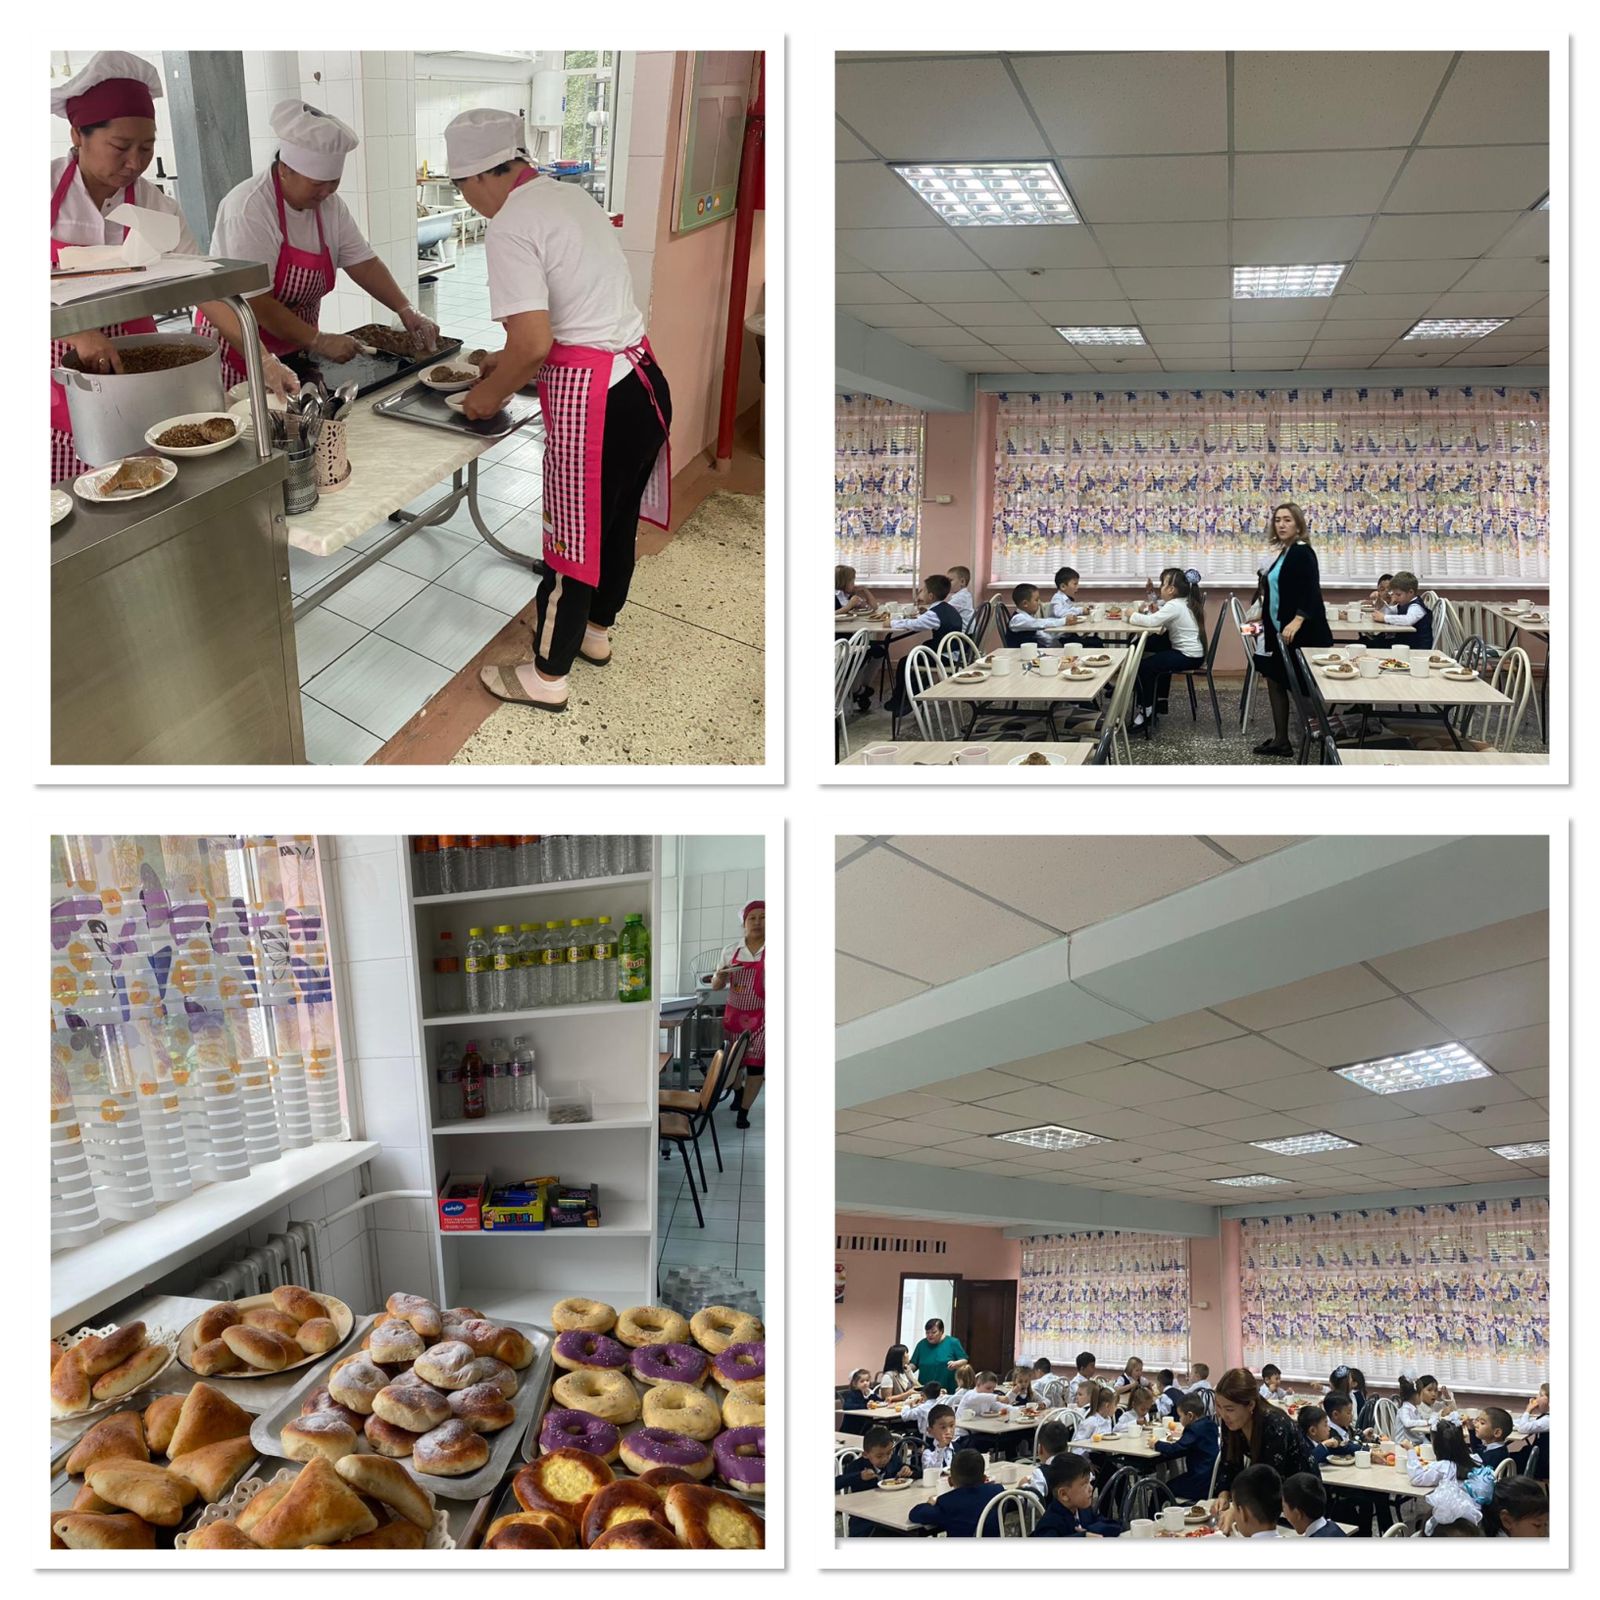 Школа 112 Жетысуского района города Алматы располагает уютным помещением столовой на 80 посадочных мест.